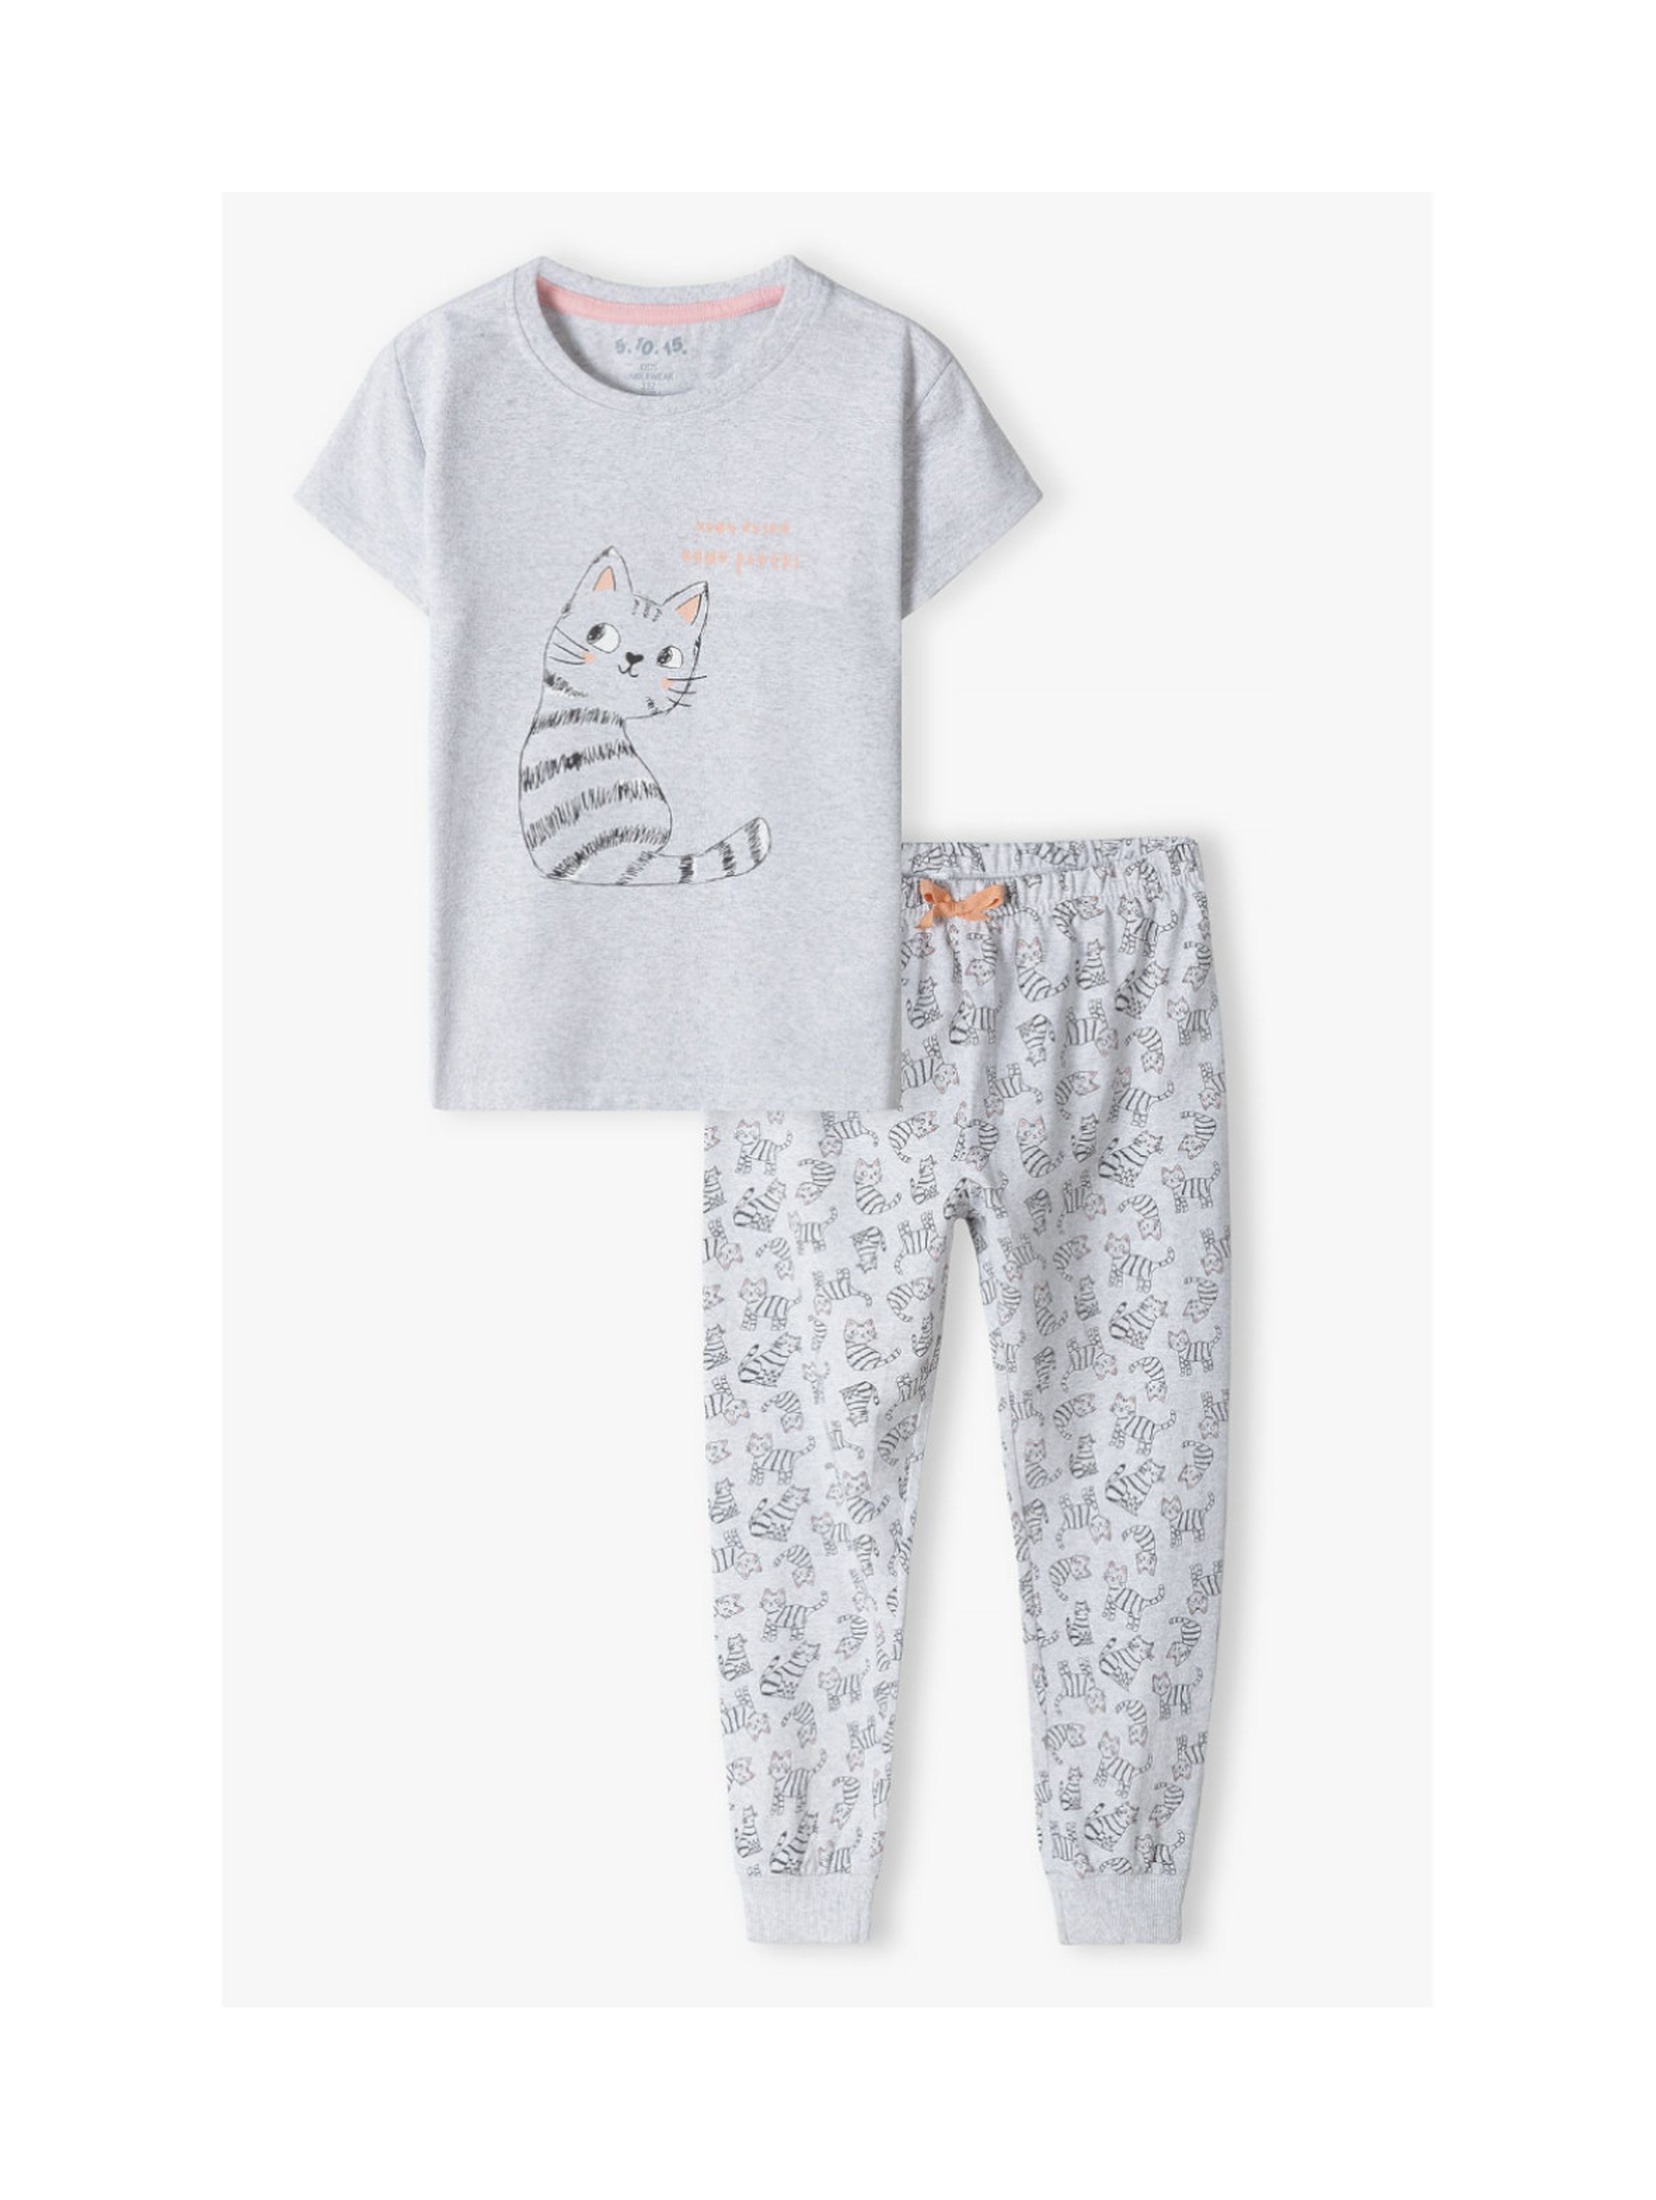 Dwuczęściowa piżama dla dziewczynki - t-shirt + długie spodnie w kotki - szara